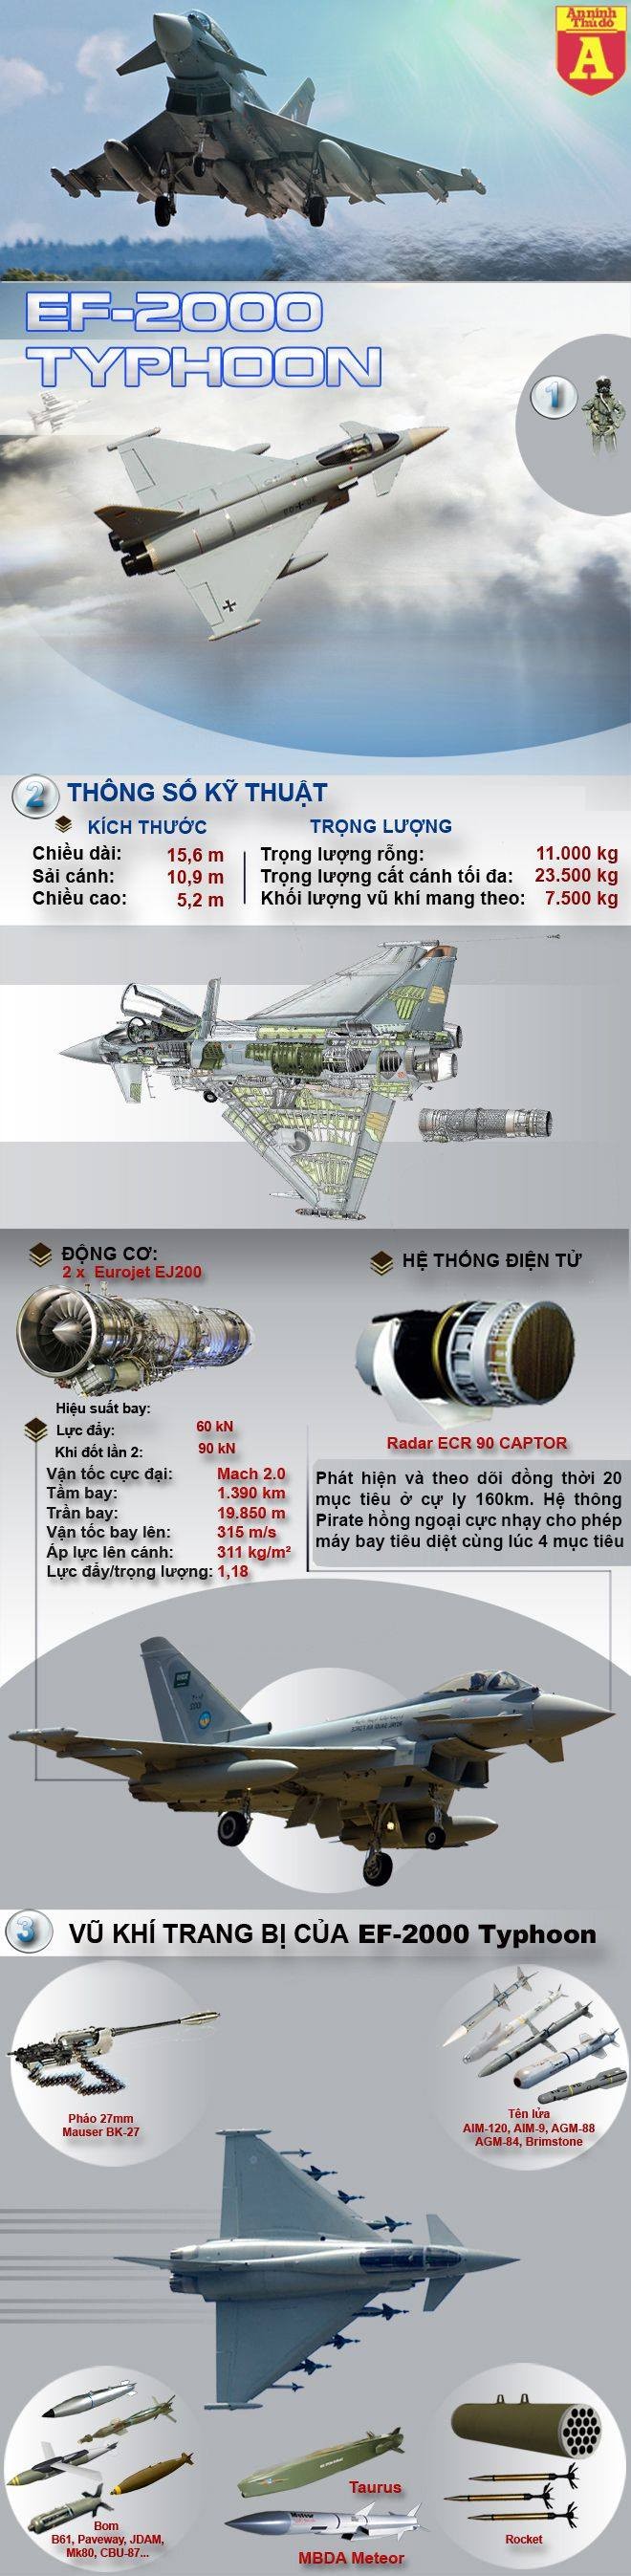 [Infographic] Sức mạnh chiếc tiêm kích mà Trung Quốc tung tin đồn "Việt Nam đã mua" ảnh 2